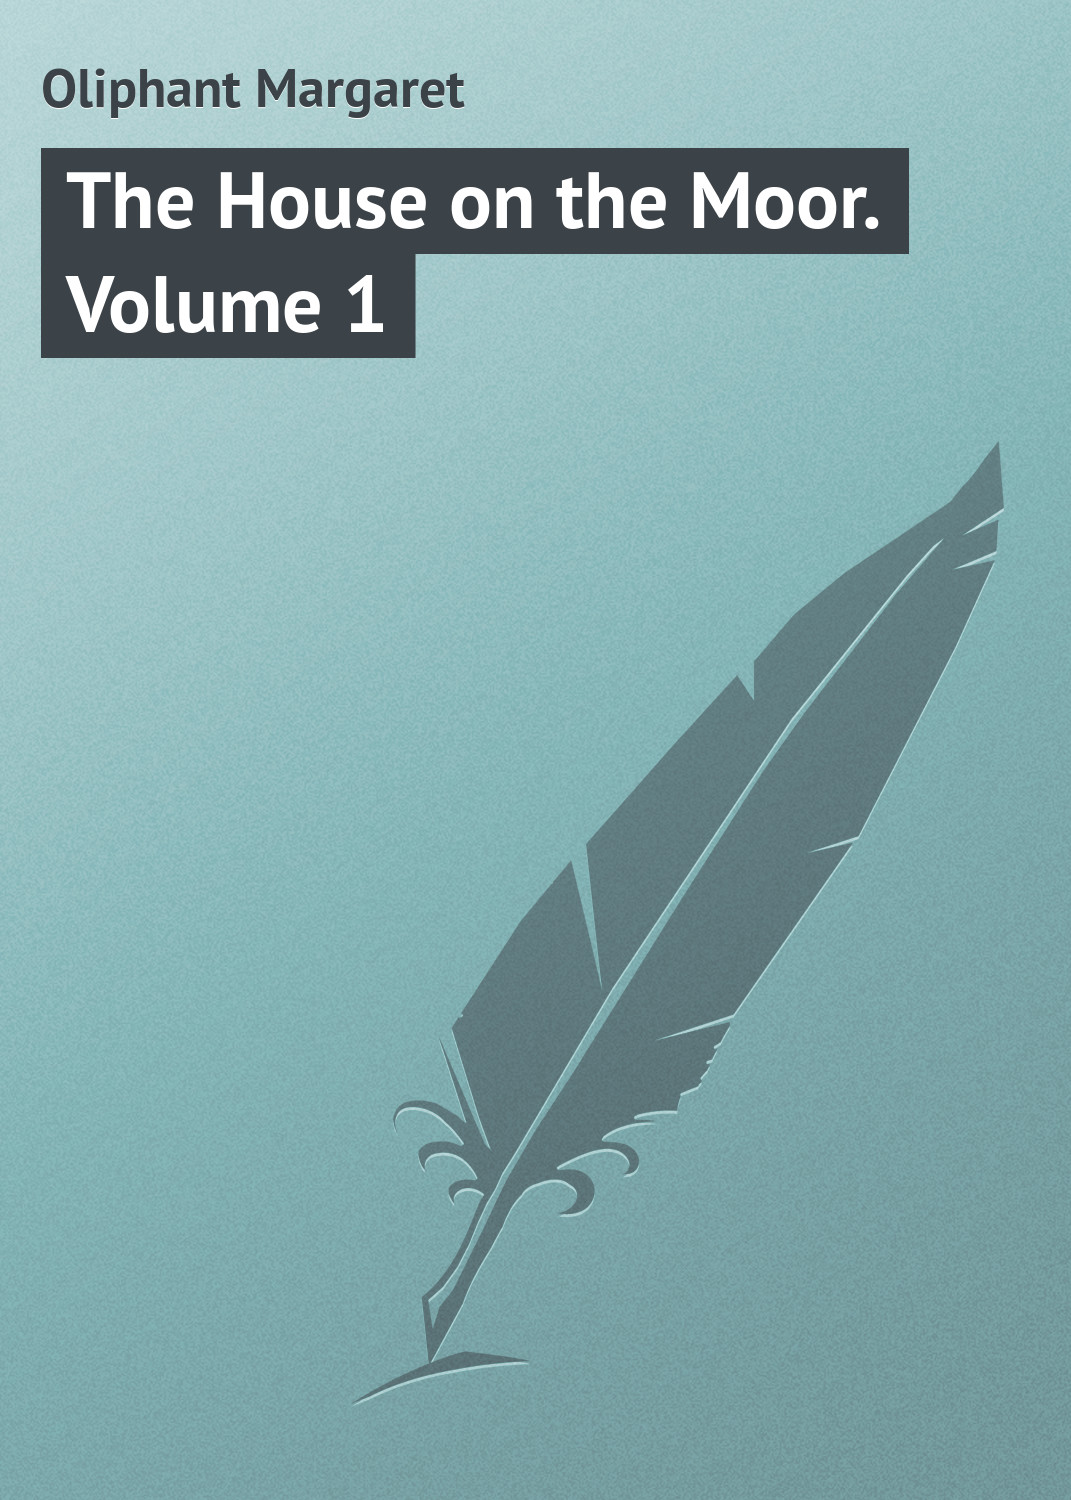 Книга The House on the Moor. Volume 1 из серии , созданная Margaret Oliphant, может относится к жанру Иностранные языки, Зарубежная классика. Стоимость электронной книги The House on the Moor. Volume 1 с идентификатором 23163211 составляет 5.99 руб.